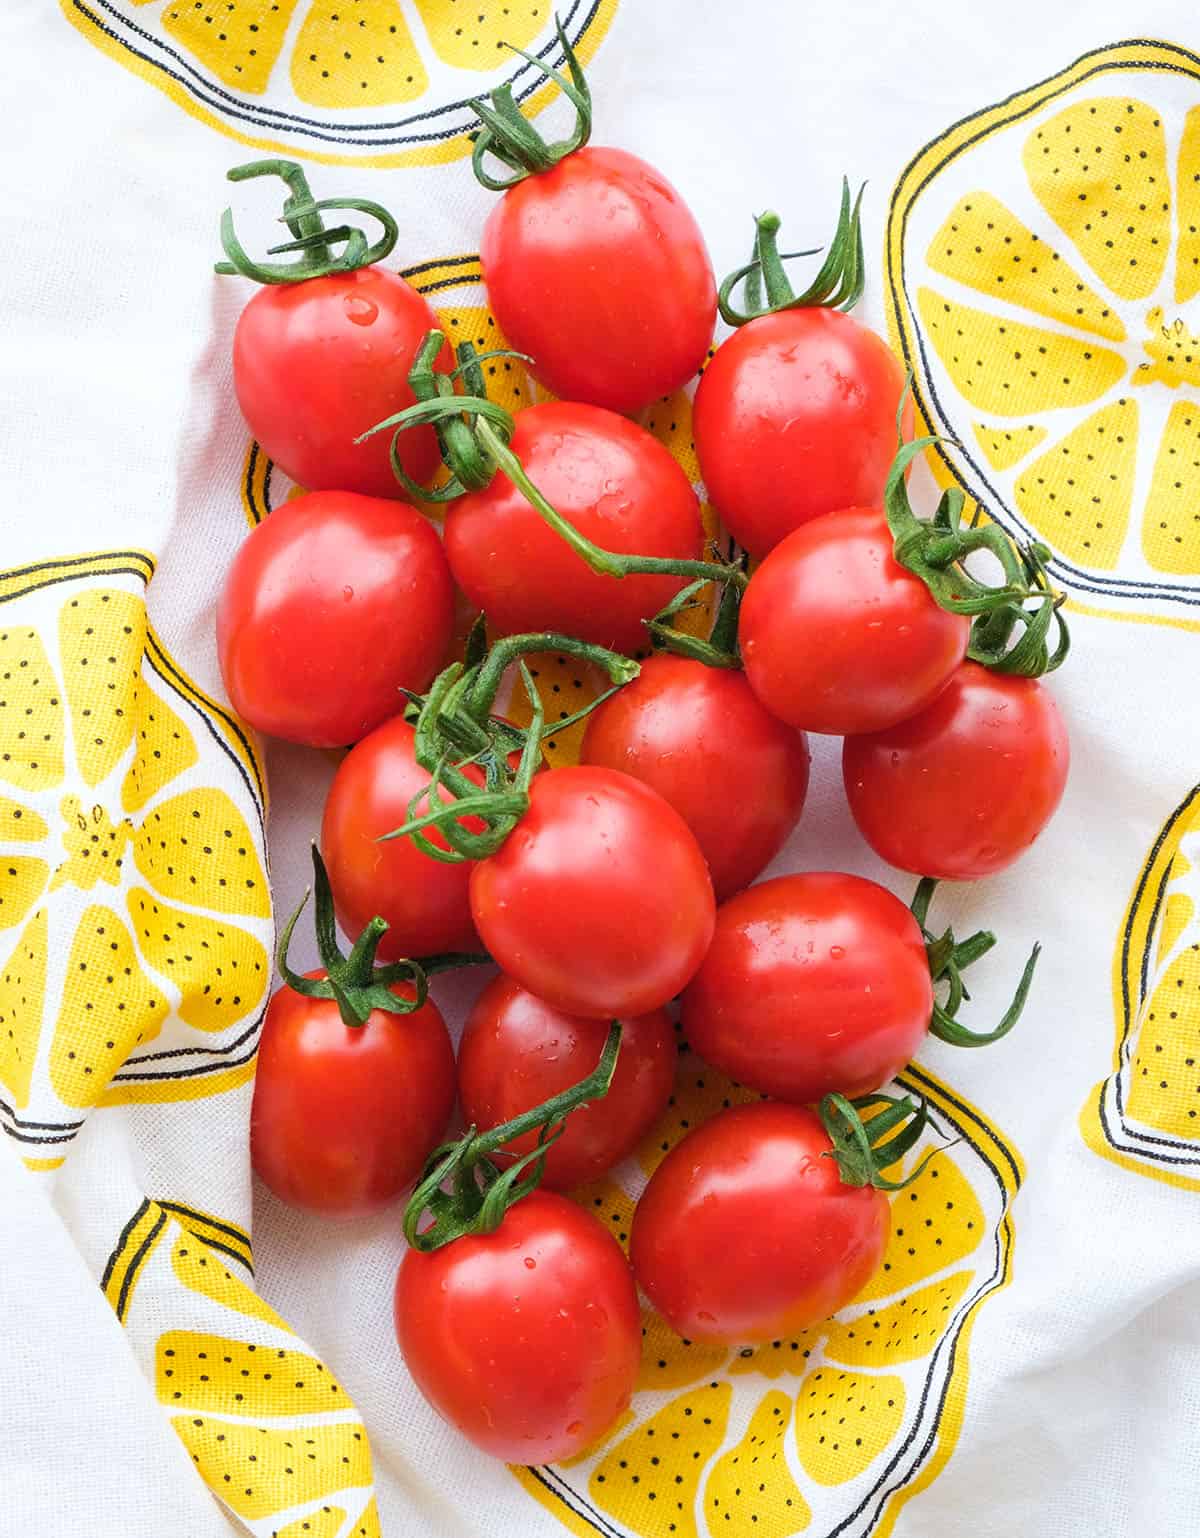 흰색과 노란색 접시 수건에 일부 체리 토마토의 상위 뷰. 